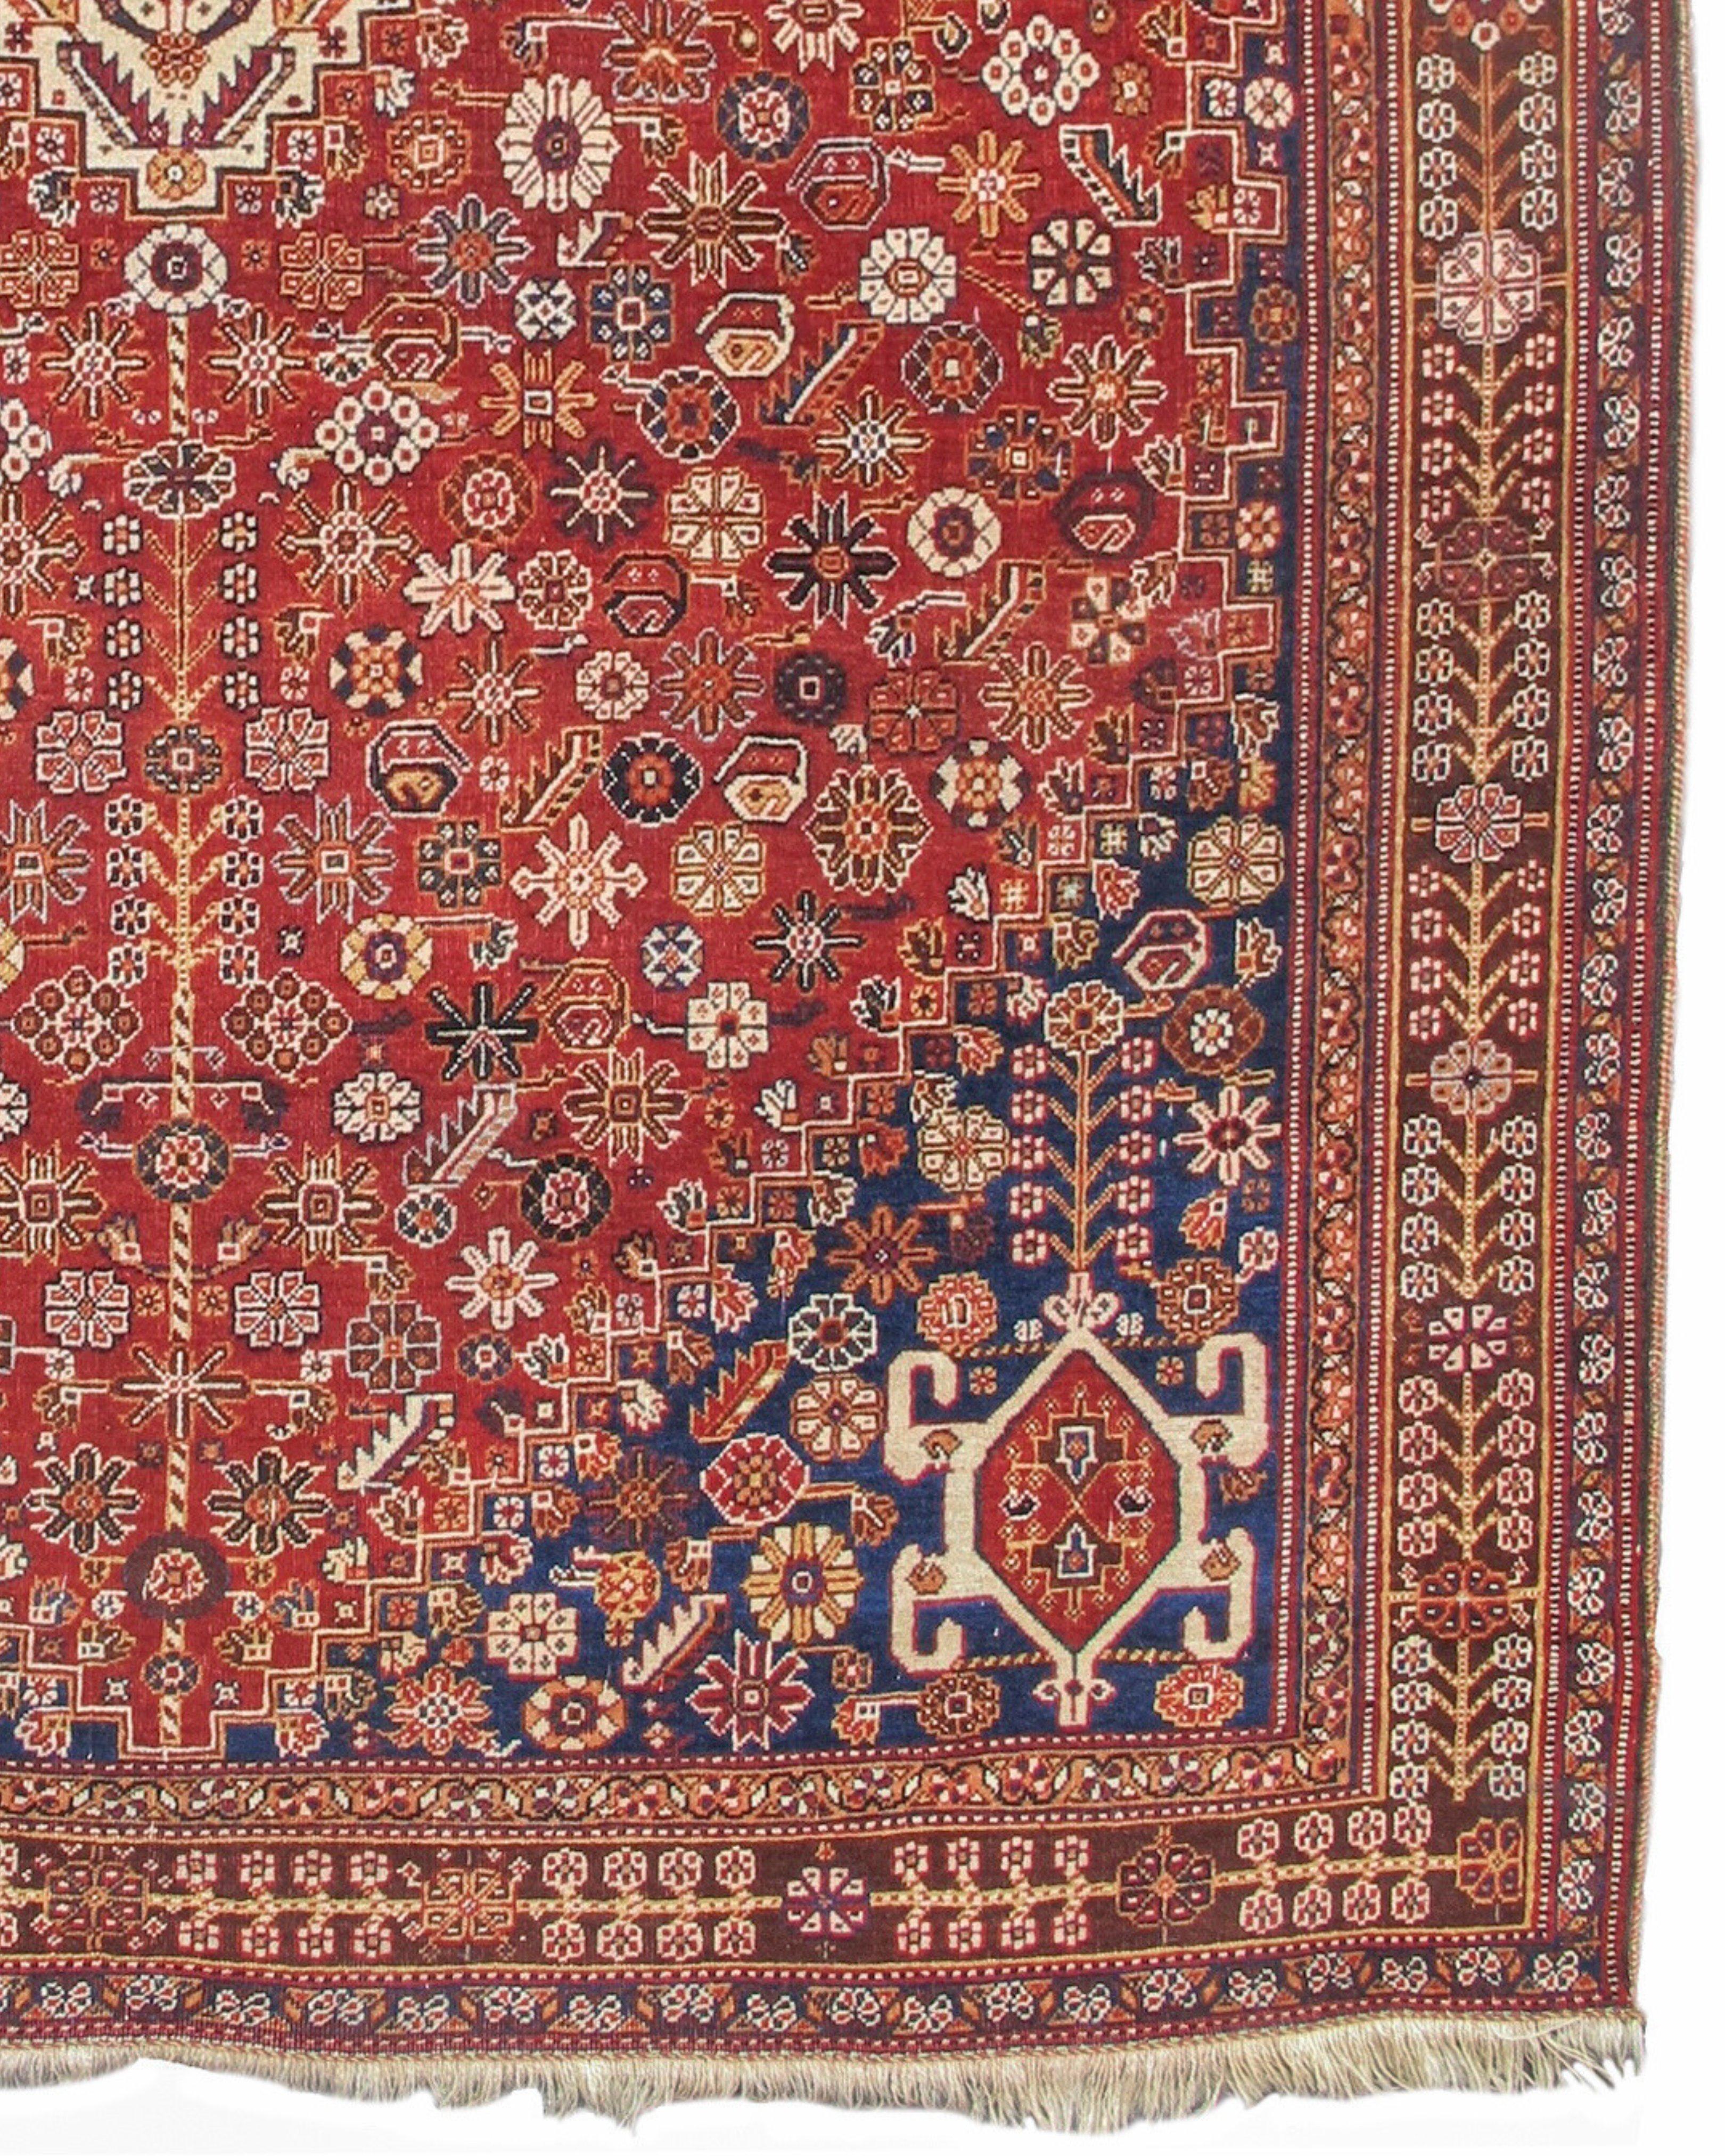 19th Century Antique Persian Qashqai Rug, c. 1900 For Sale